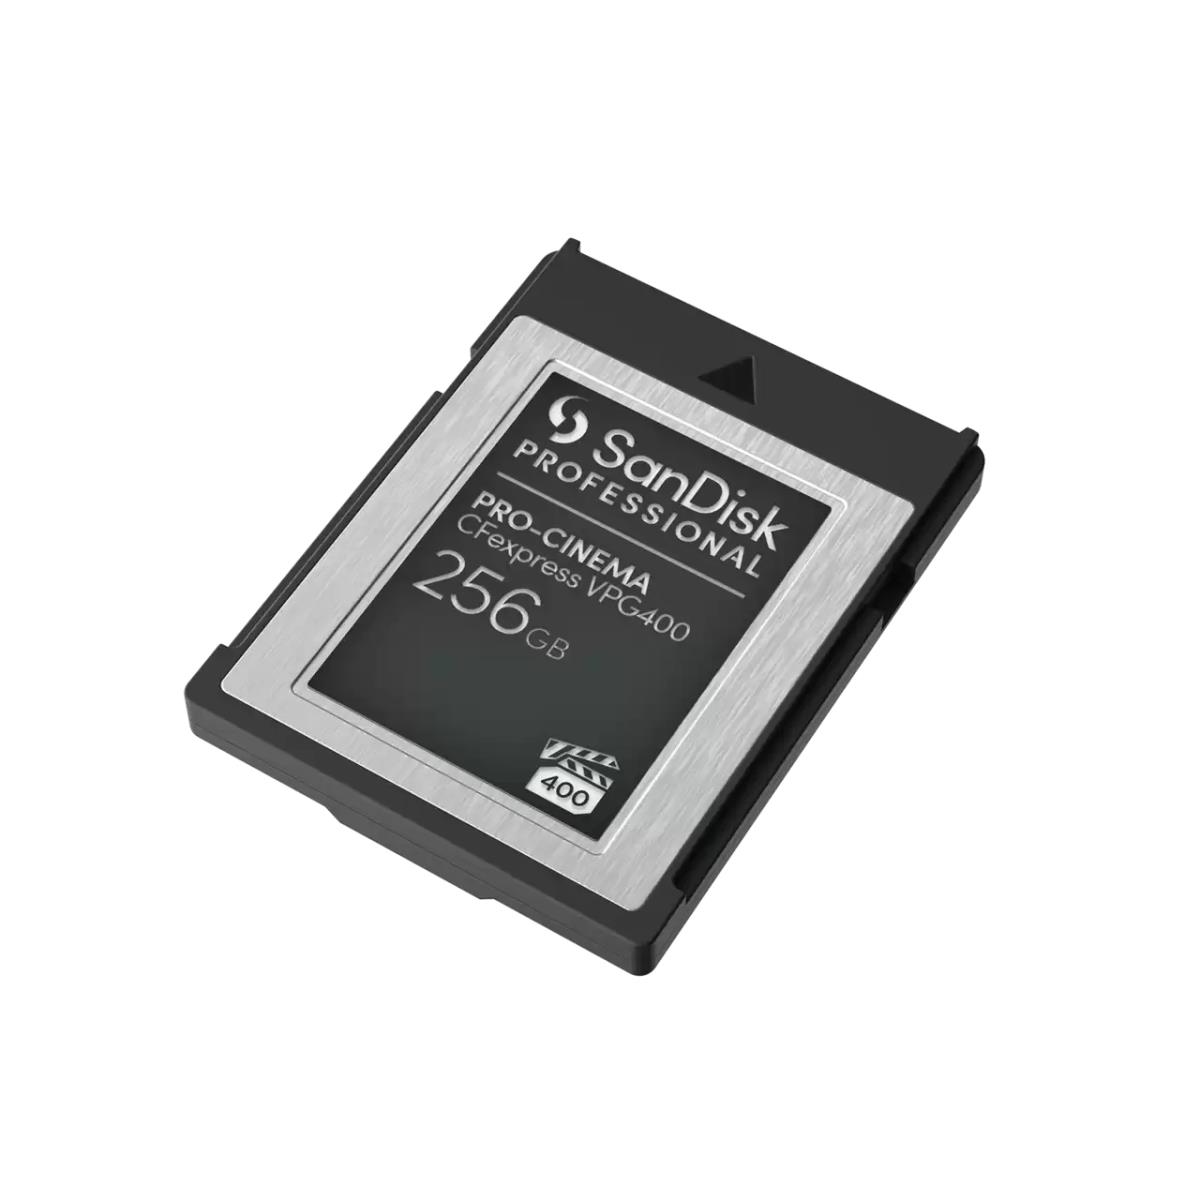 SANDISK SD EXTREME PRO 512GB (jusqu'à 200MB/S en lecture et 140MB/S en  écriture)